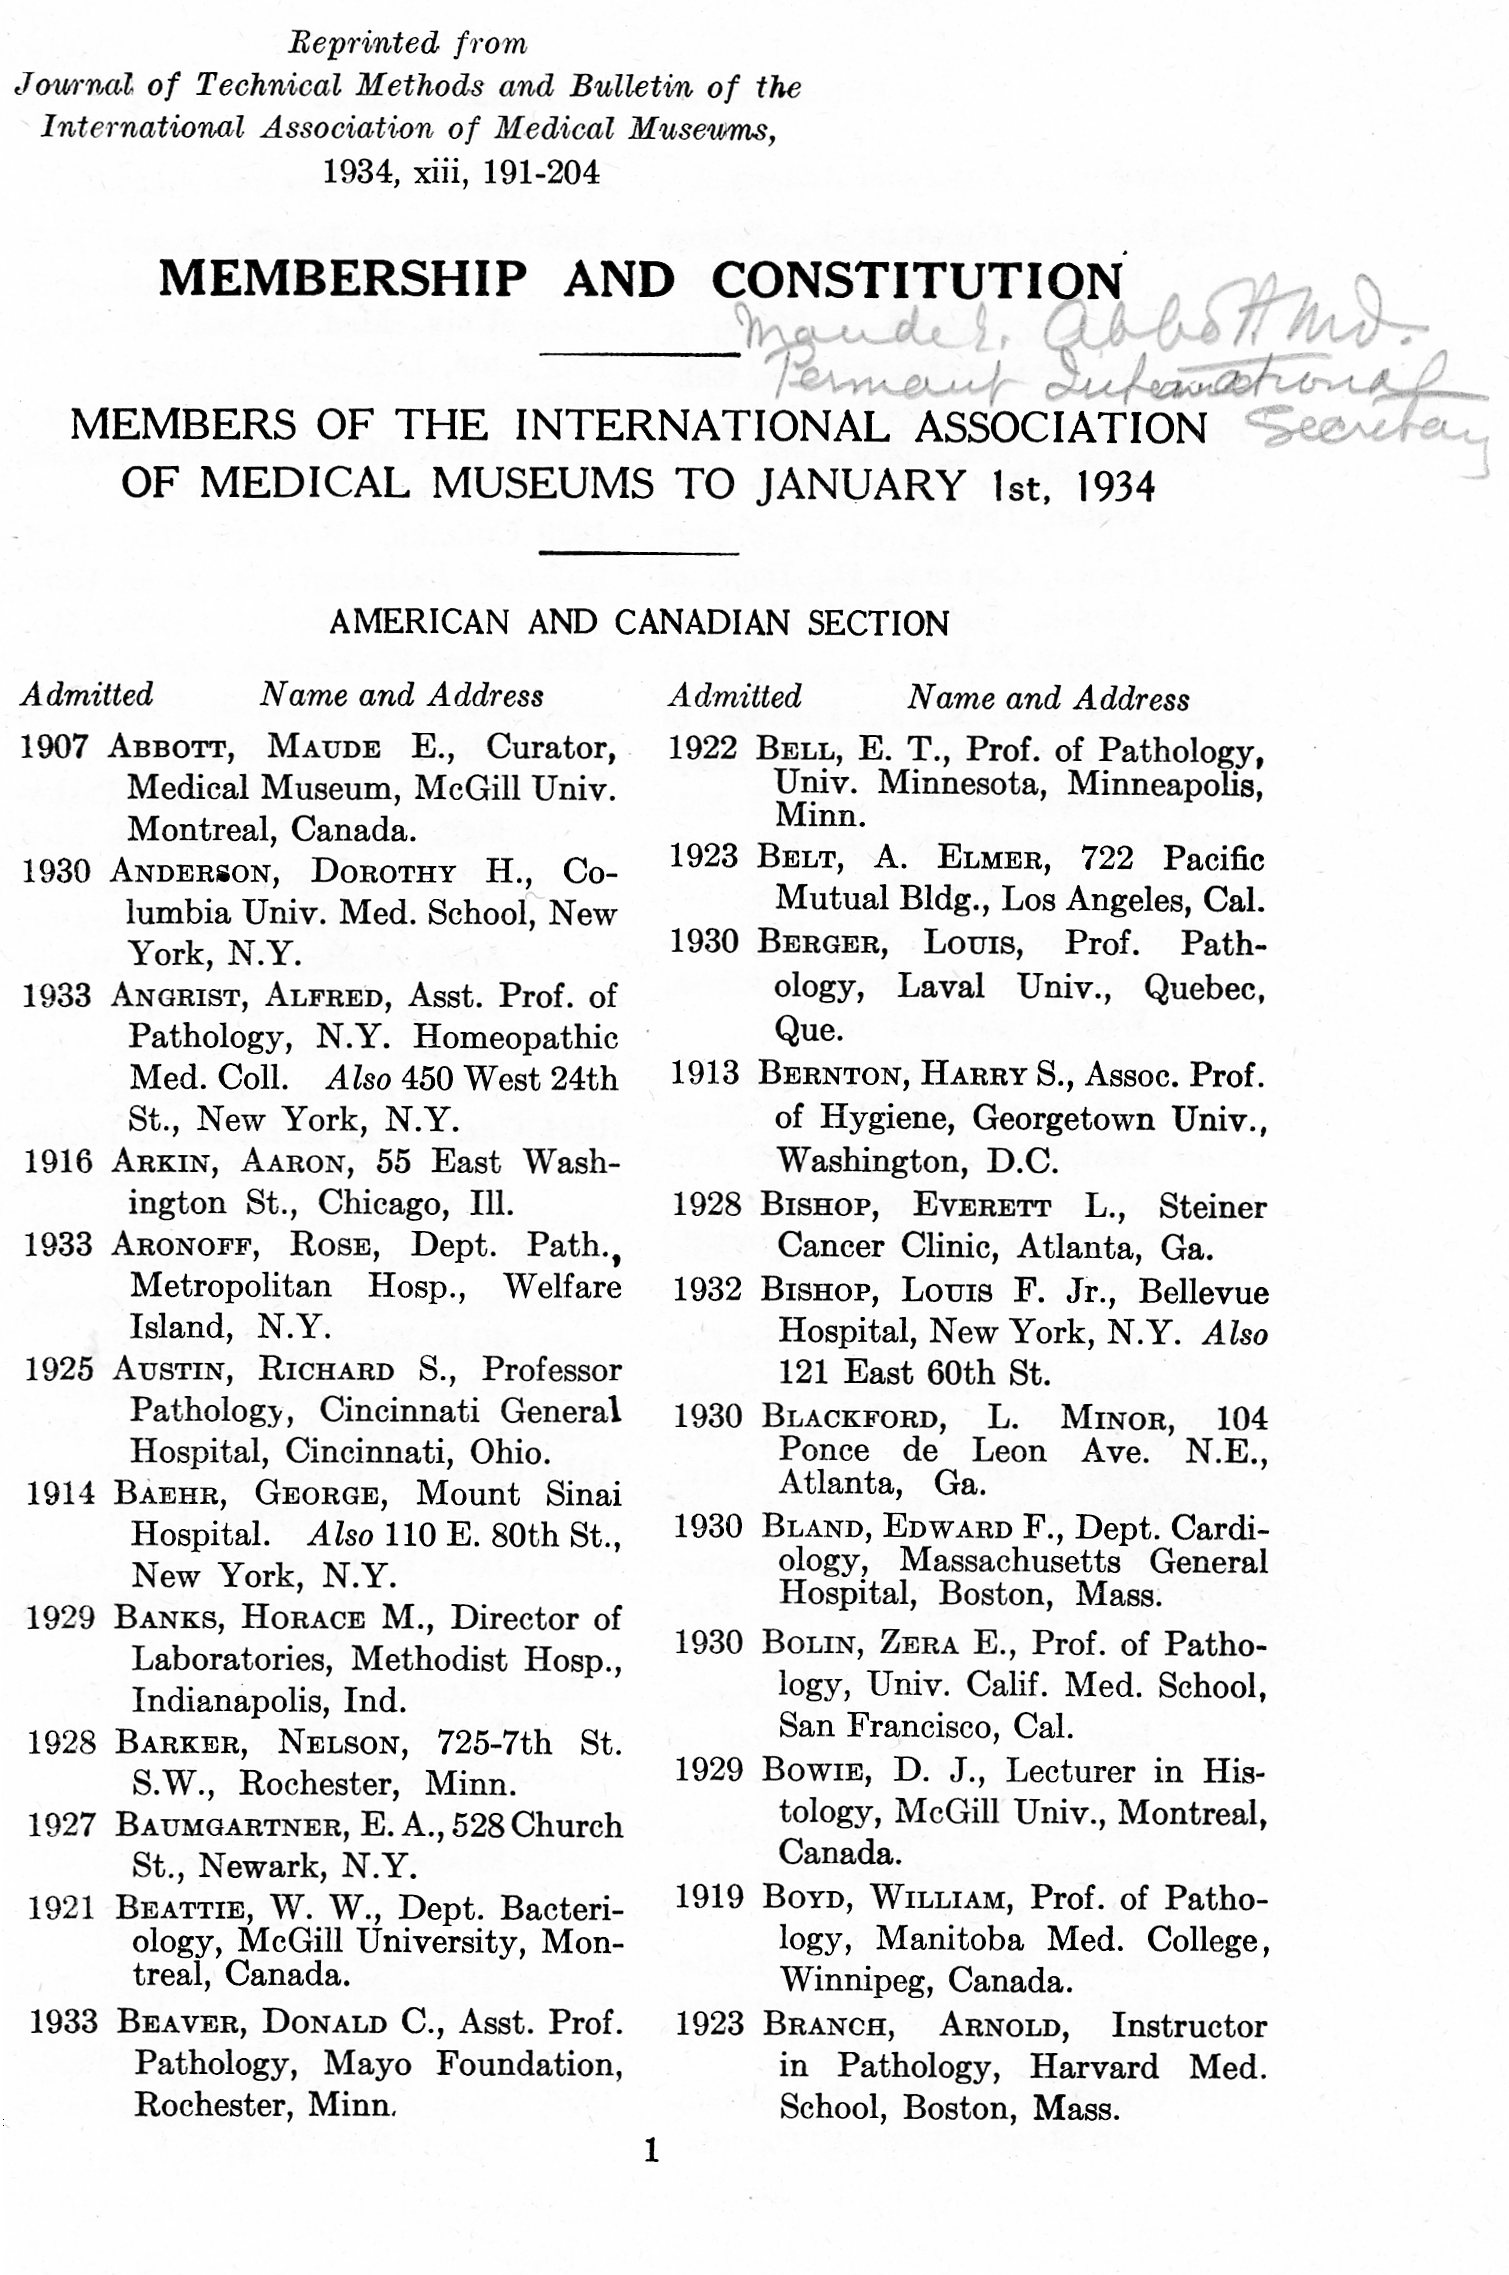 Page 1 de la liste des membres de l’Association internationale des musées médicaux en date du 1er janvier 1934. Encre noire sur papier blanc. La liste est sur deux colonnes où on indique l’année d’admission dans la l’association, le nom et l’adresse. La première entrée sur cette page est « 1907 – Abbott, Maude E., Curator, Medical Museum, McGill Univ. Montreal, Canada ». Est écrit à la mine dans le coin droit : « Maude E. Abbott md., permanent international secretary. »